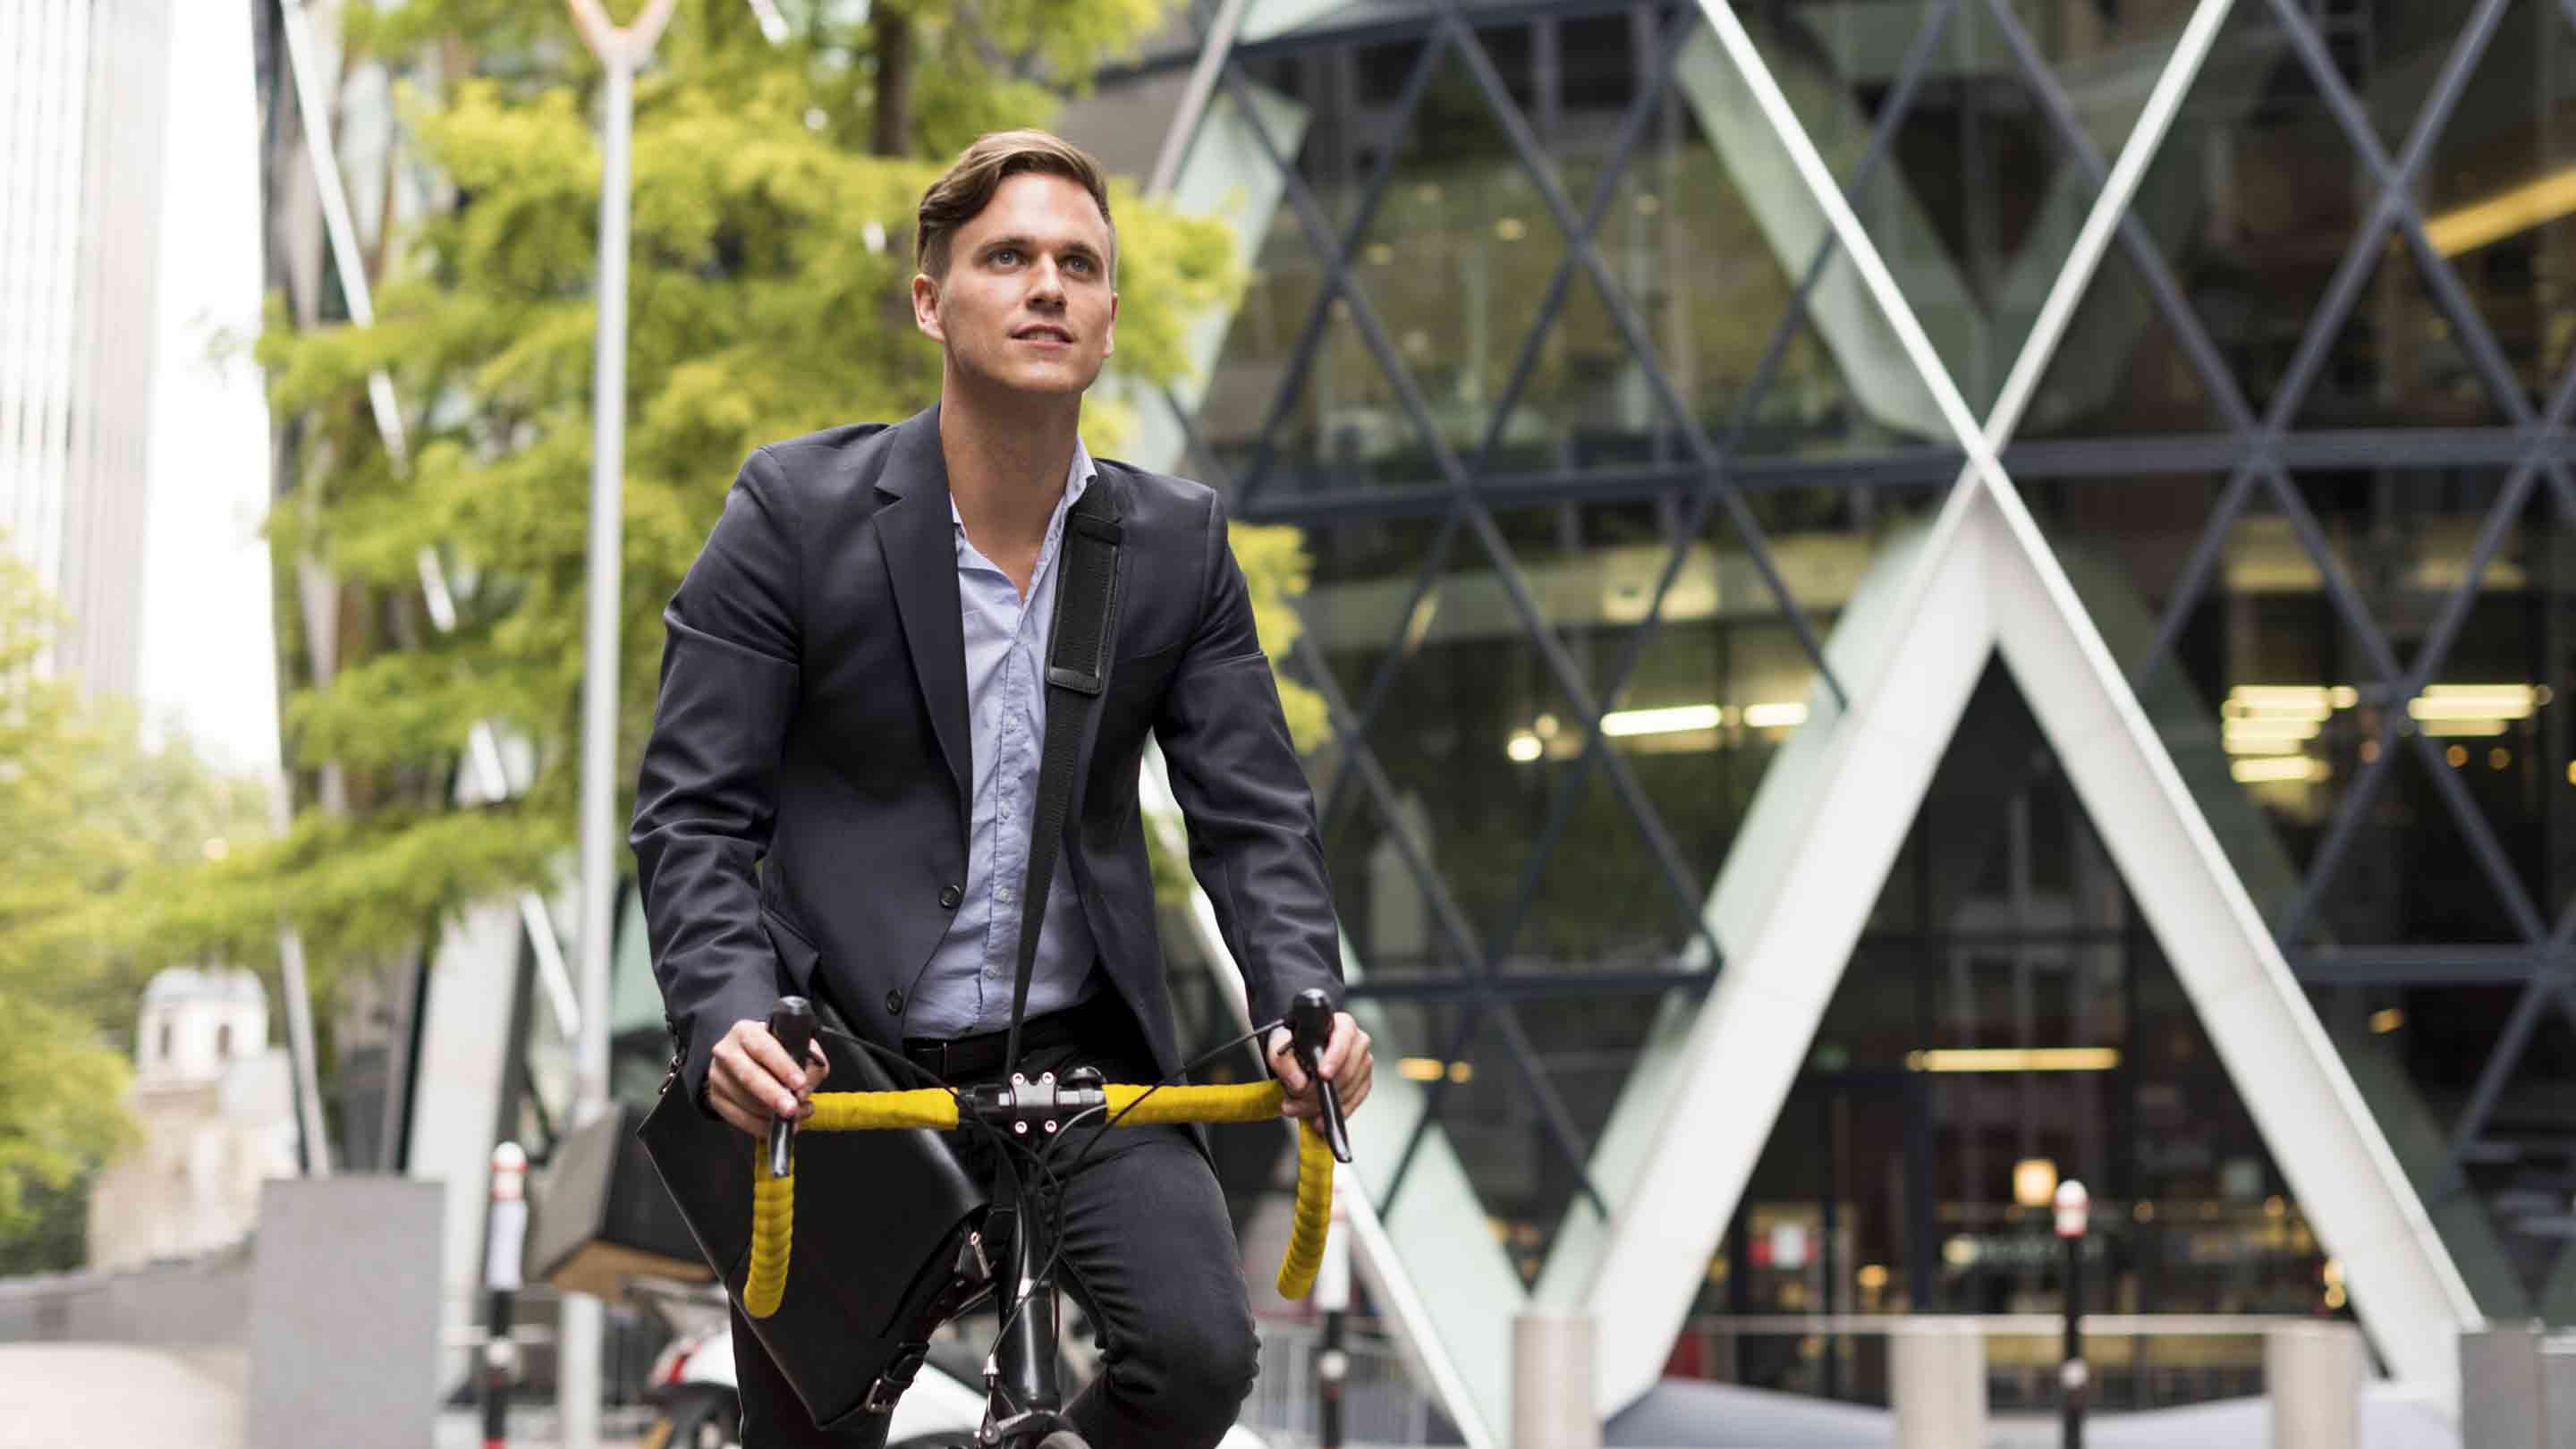 Businessman on bike in London